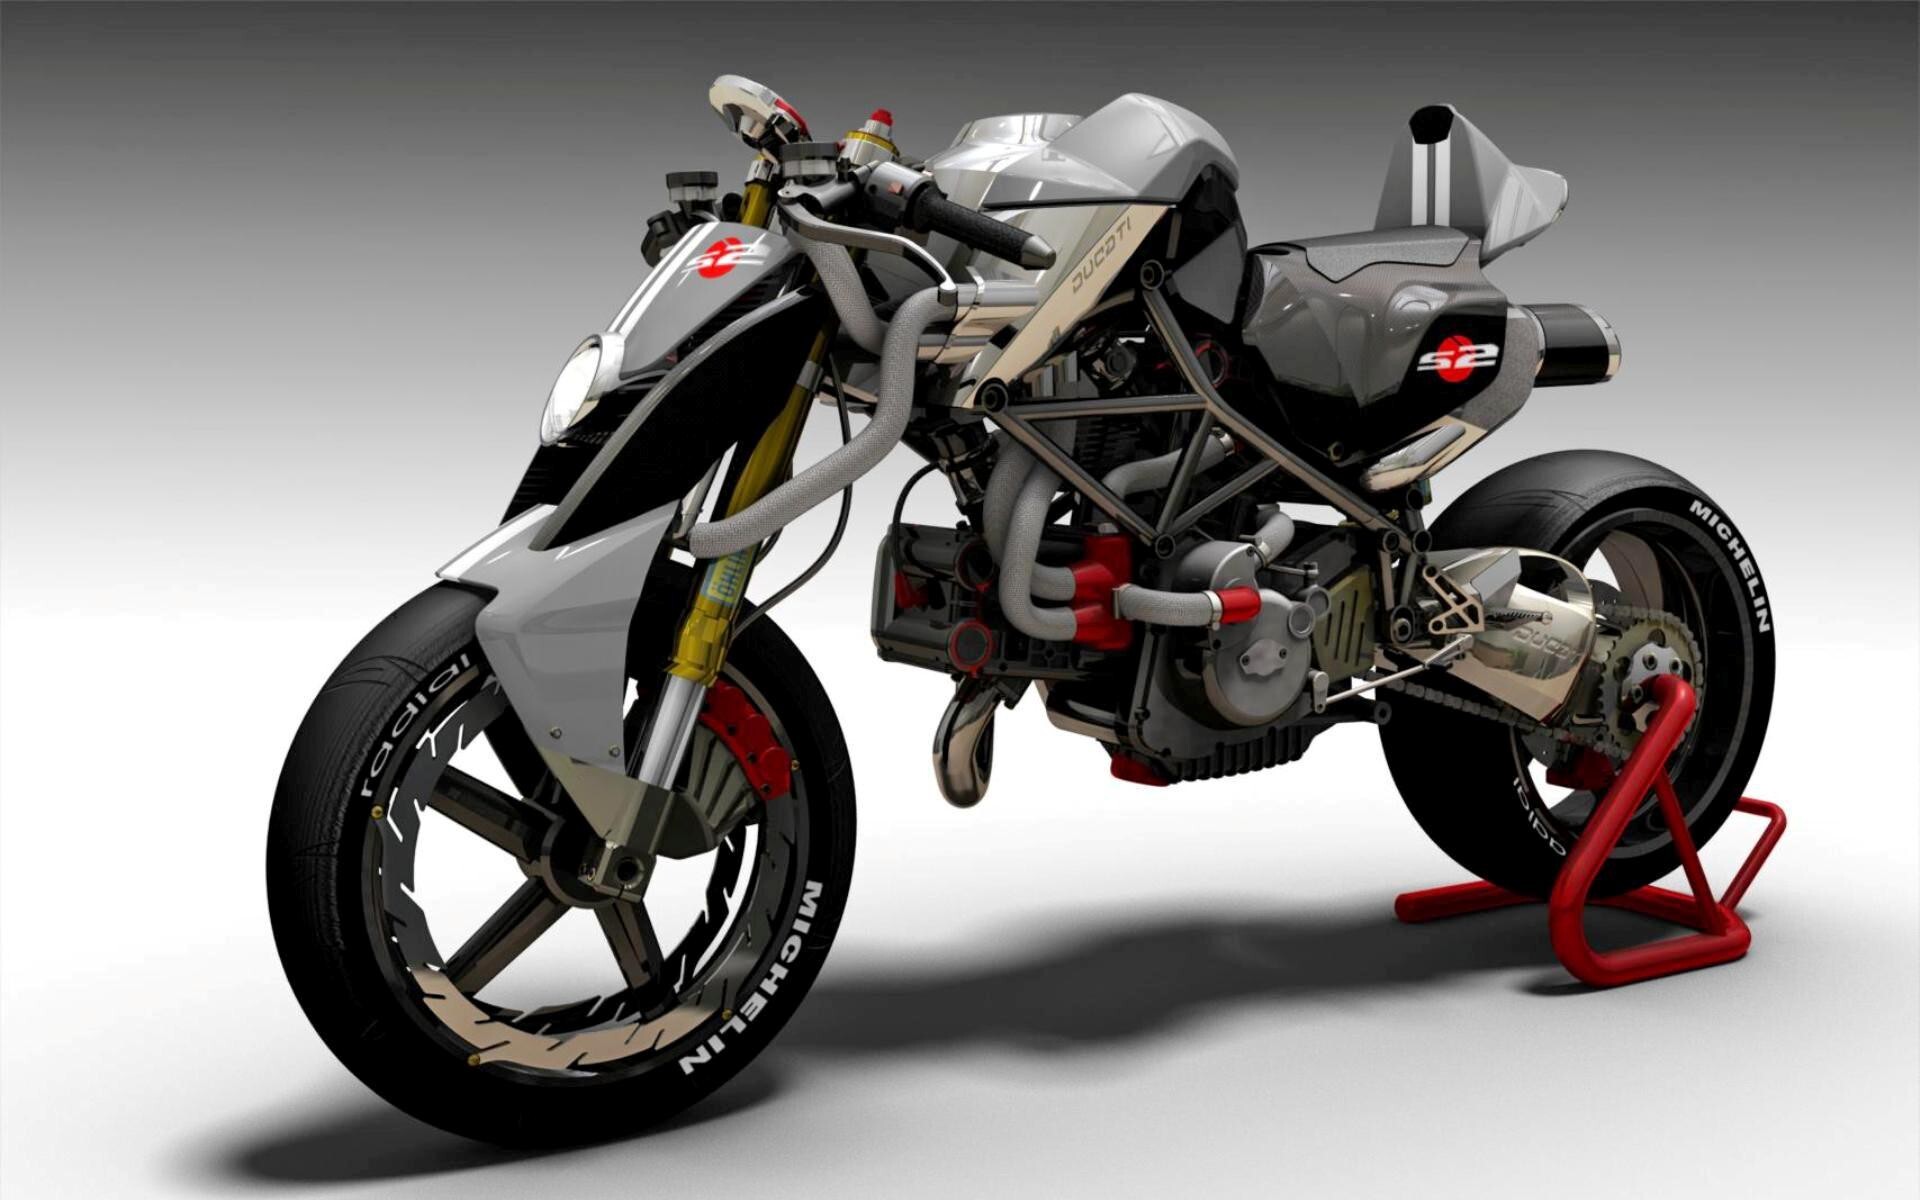  Ducati S2-Braida